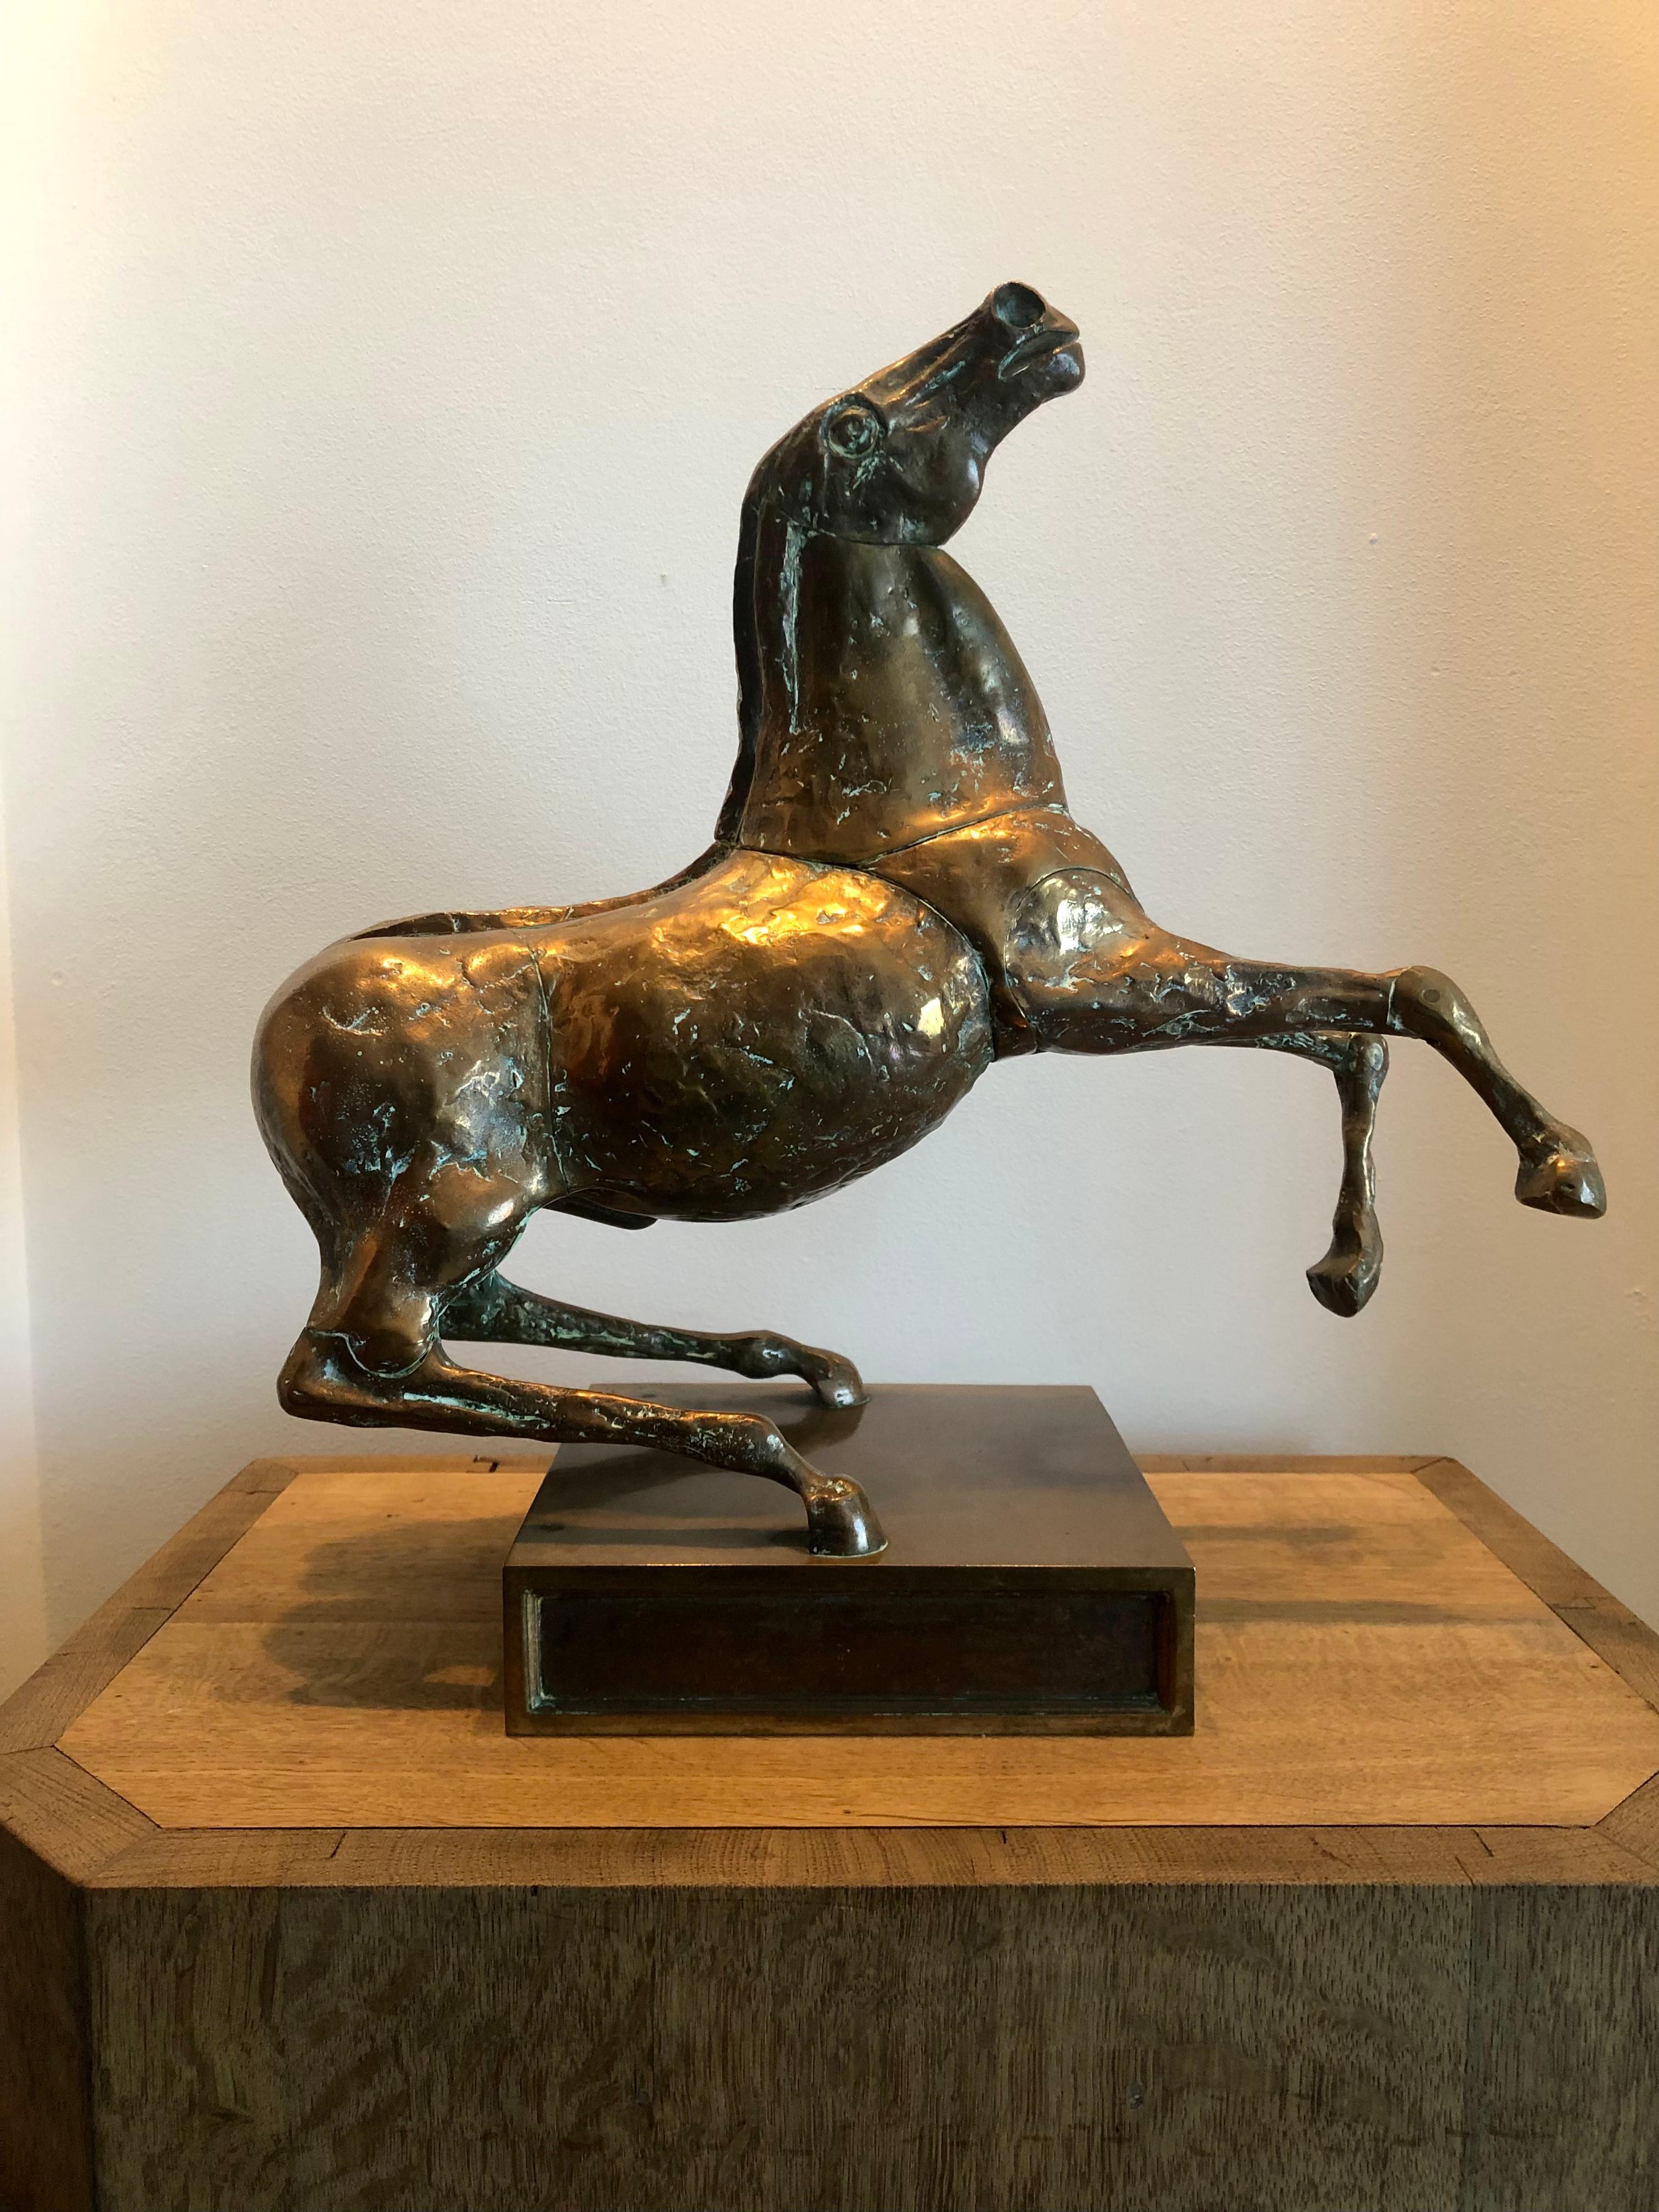 Skulptur eines Pferdes in Bronze nummeriert und signiert
Miguel Berrocal.
Guter Zustand mit einer schönen Patina.
Gute Qualität der Besetzung.